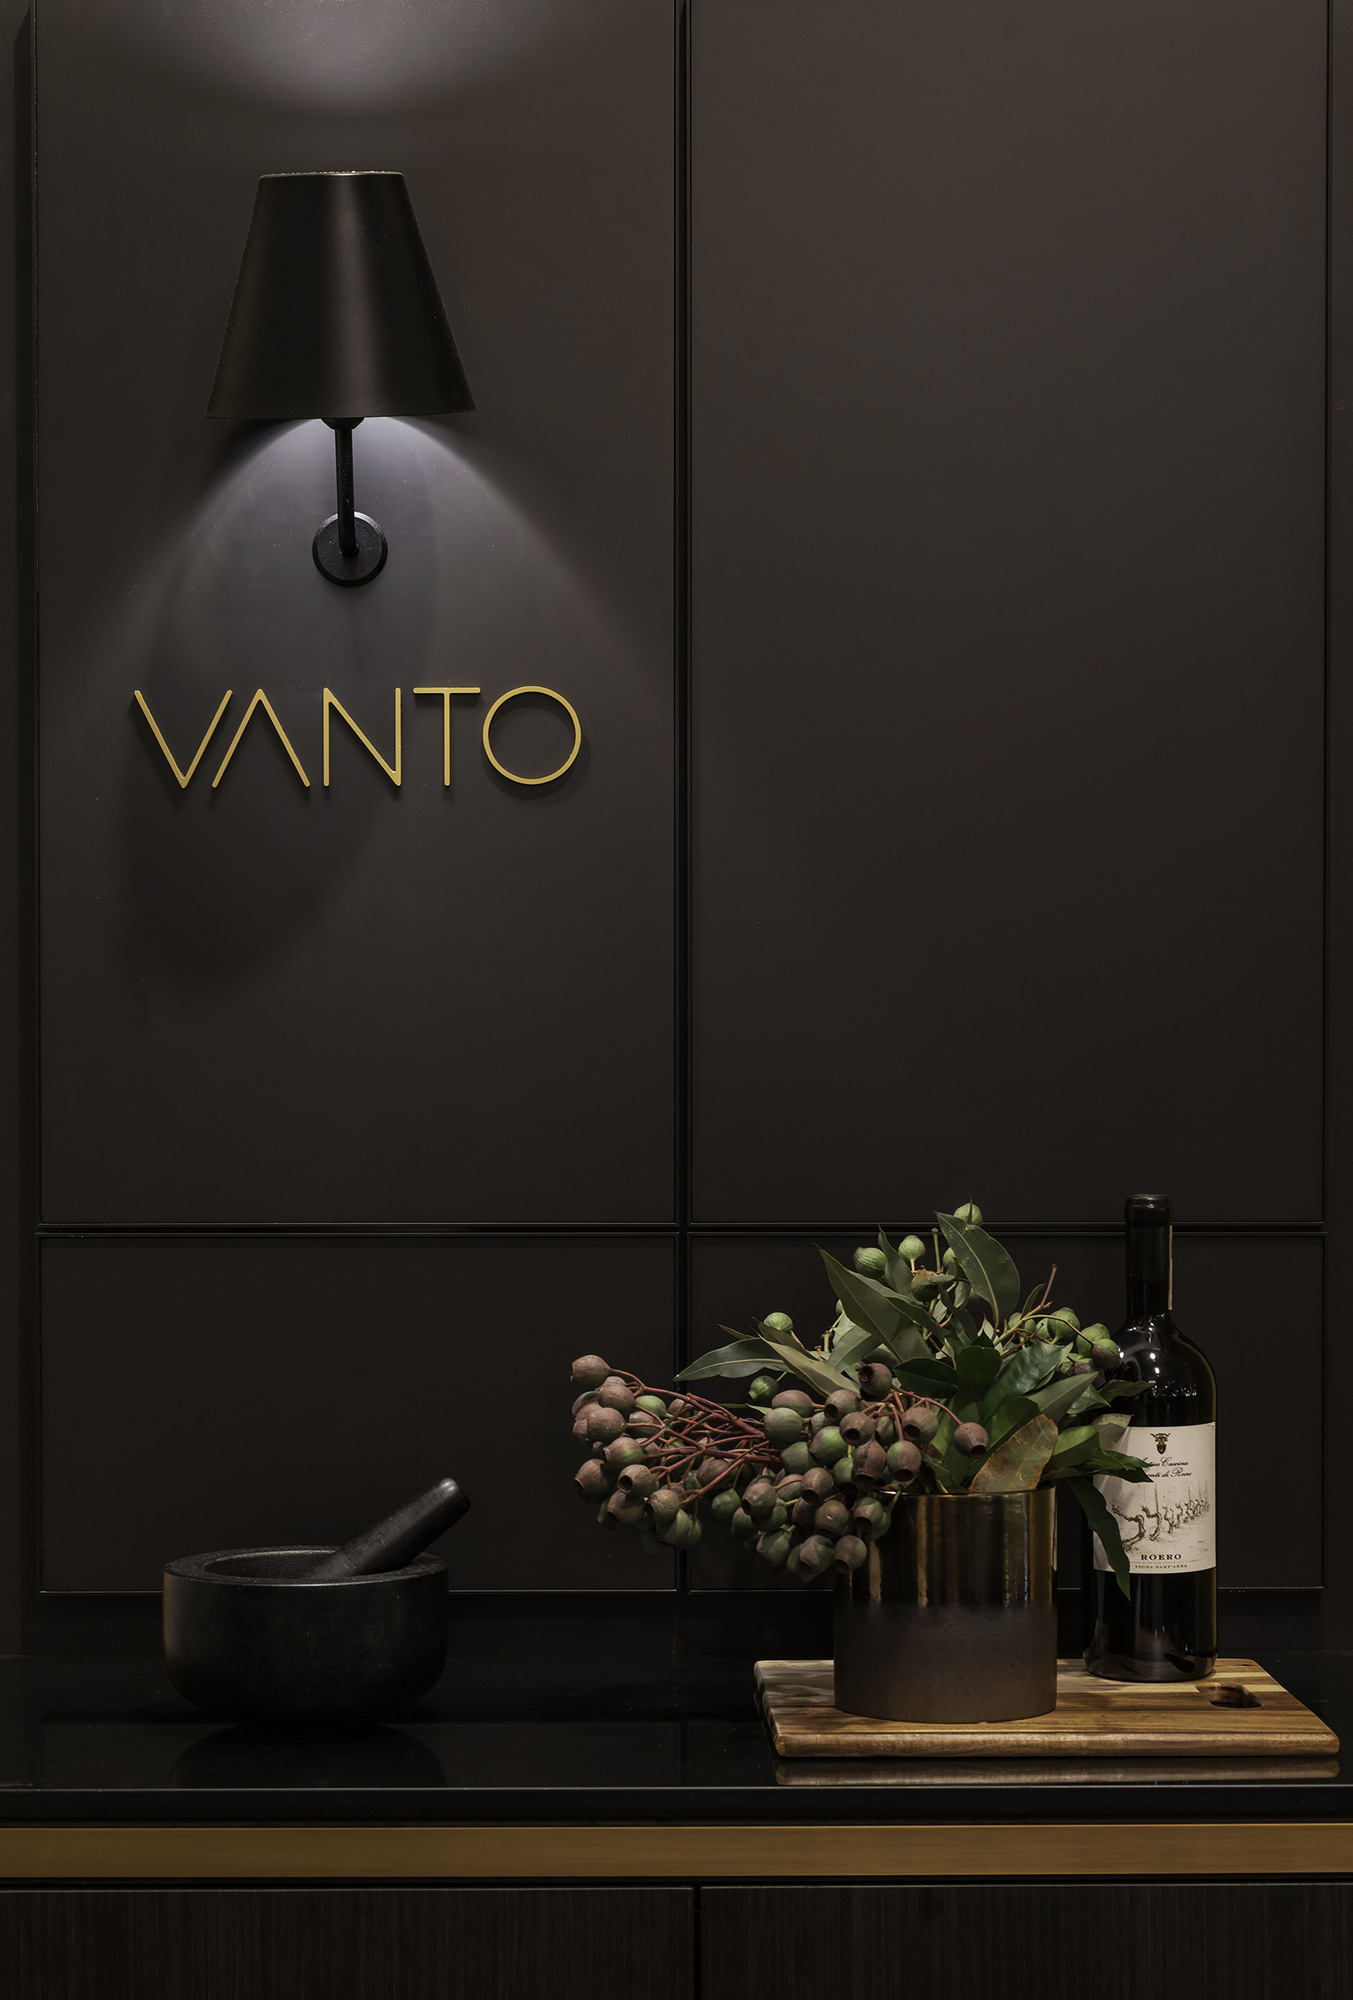 Vanto意大利餐厅|ART-Arrakis | 建筑室内设计的创新与灵感